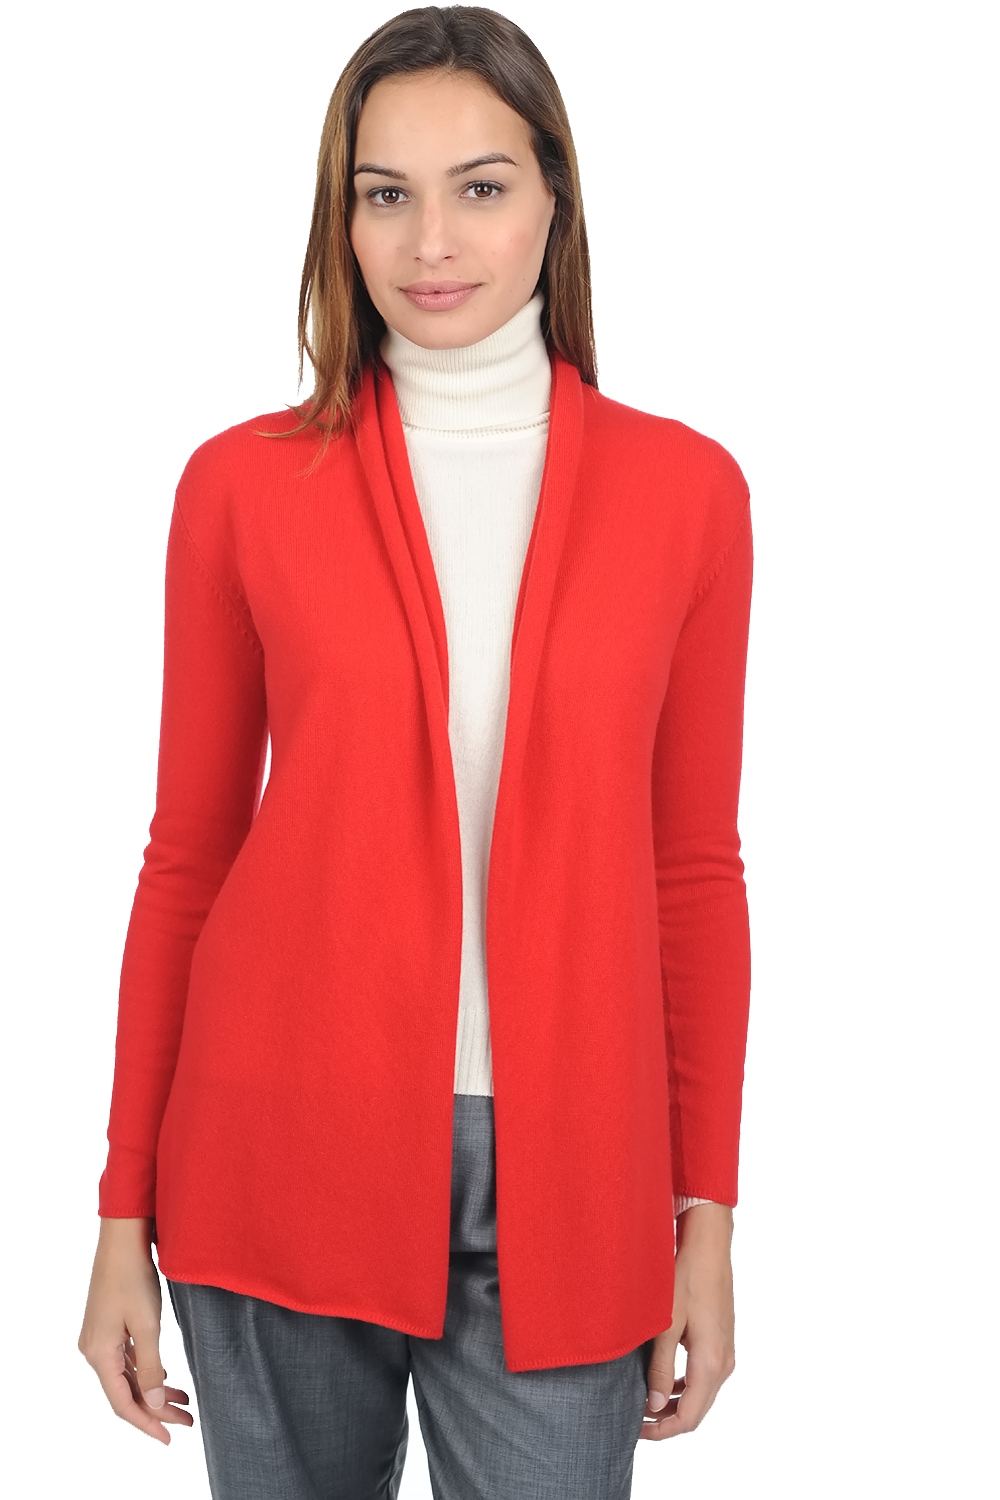 Cashmere ladies premium sweaters pucci premium tango red 4xl